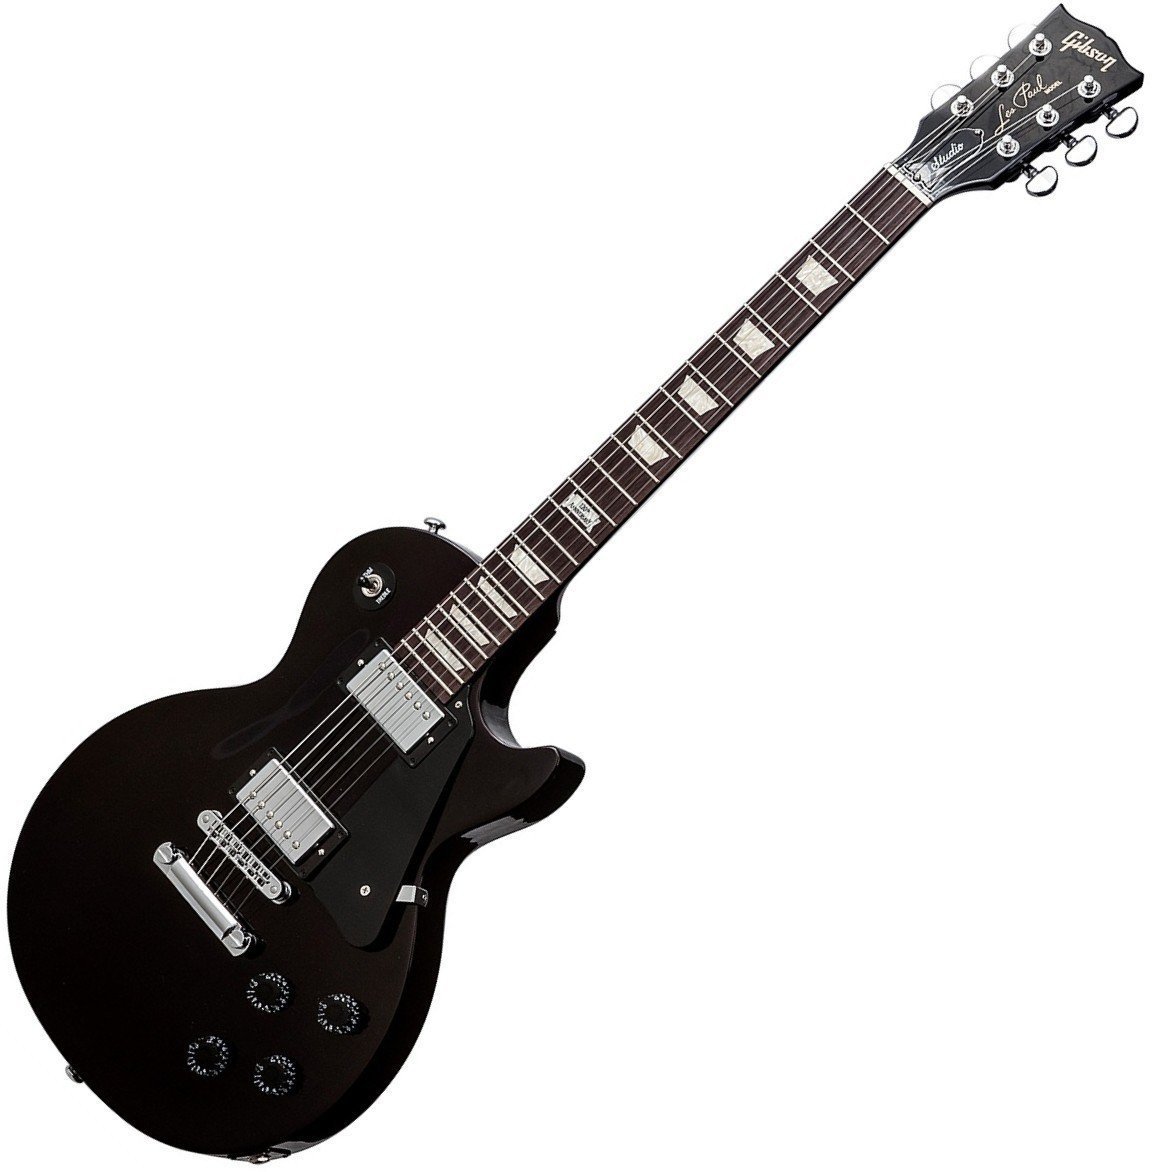 Elektrische gitaar Gibson Les Paul Studio Pro 2014 Black Cherry Pearl